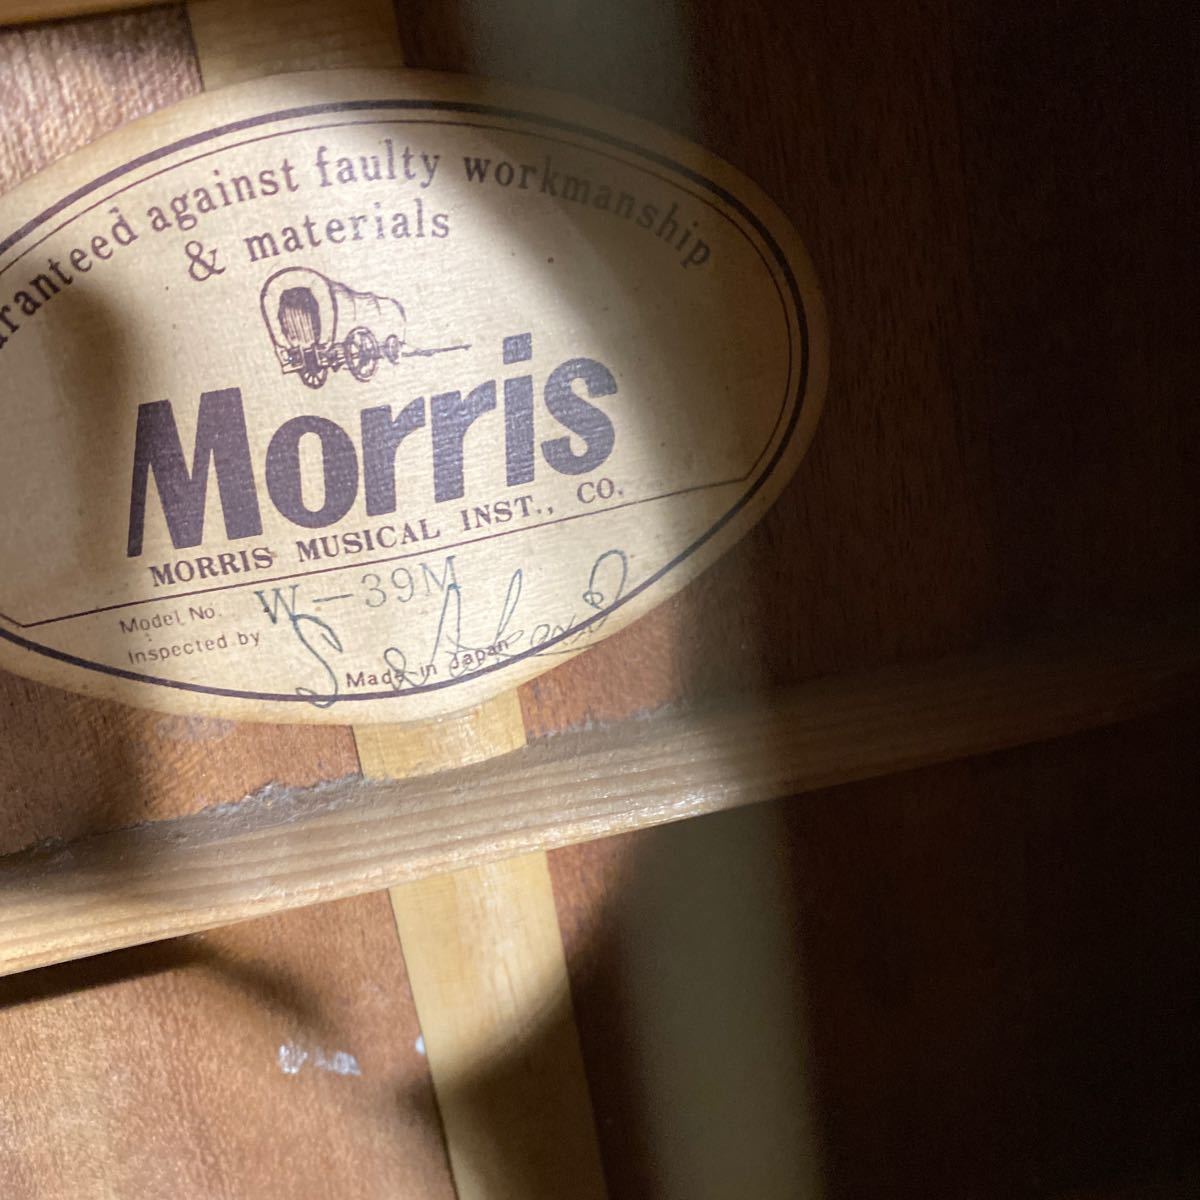 【超激安】MORRIS アコースティックギター W-39M ギター/モーリス/アコギ/Natural 日本製 ヴィンテージ弦楽器 演奏/超破格大特価1000円_画像9